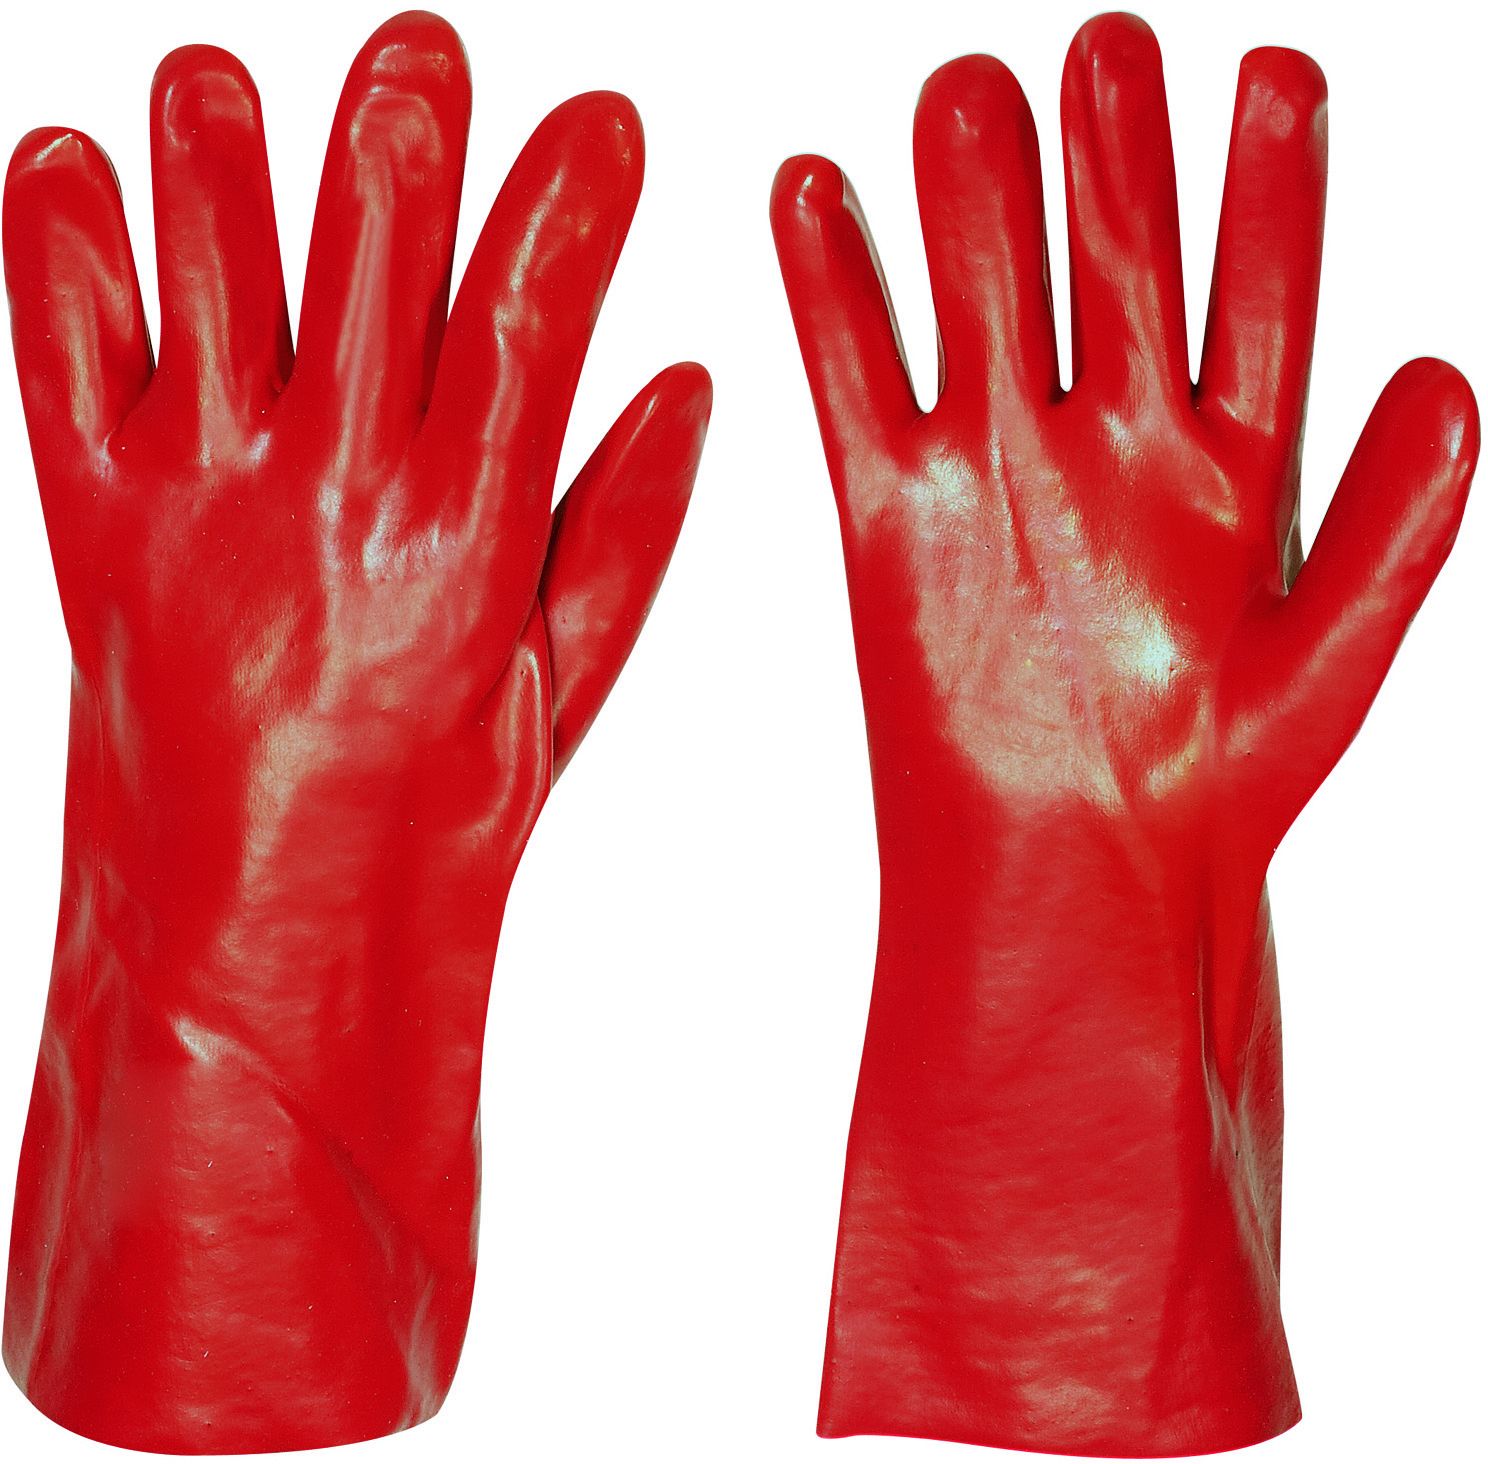 Stronghand Vinyl Handschuh Denver Rot 35 cm